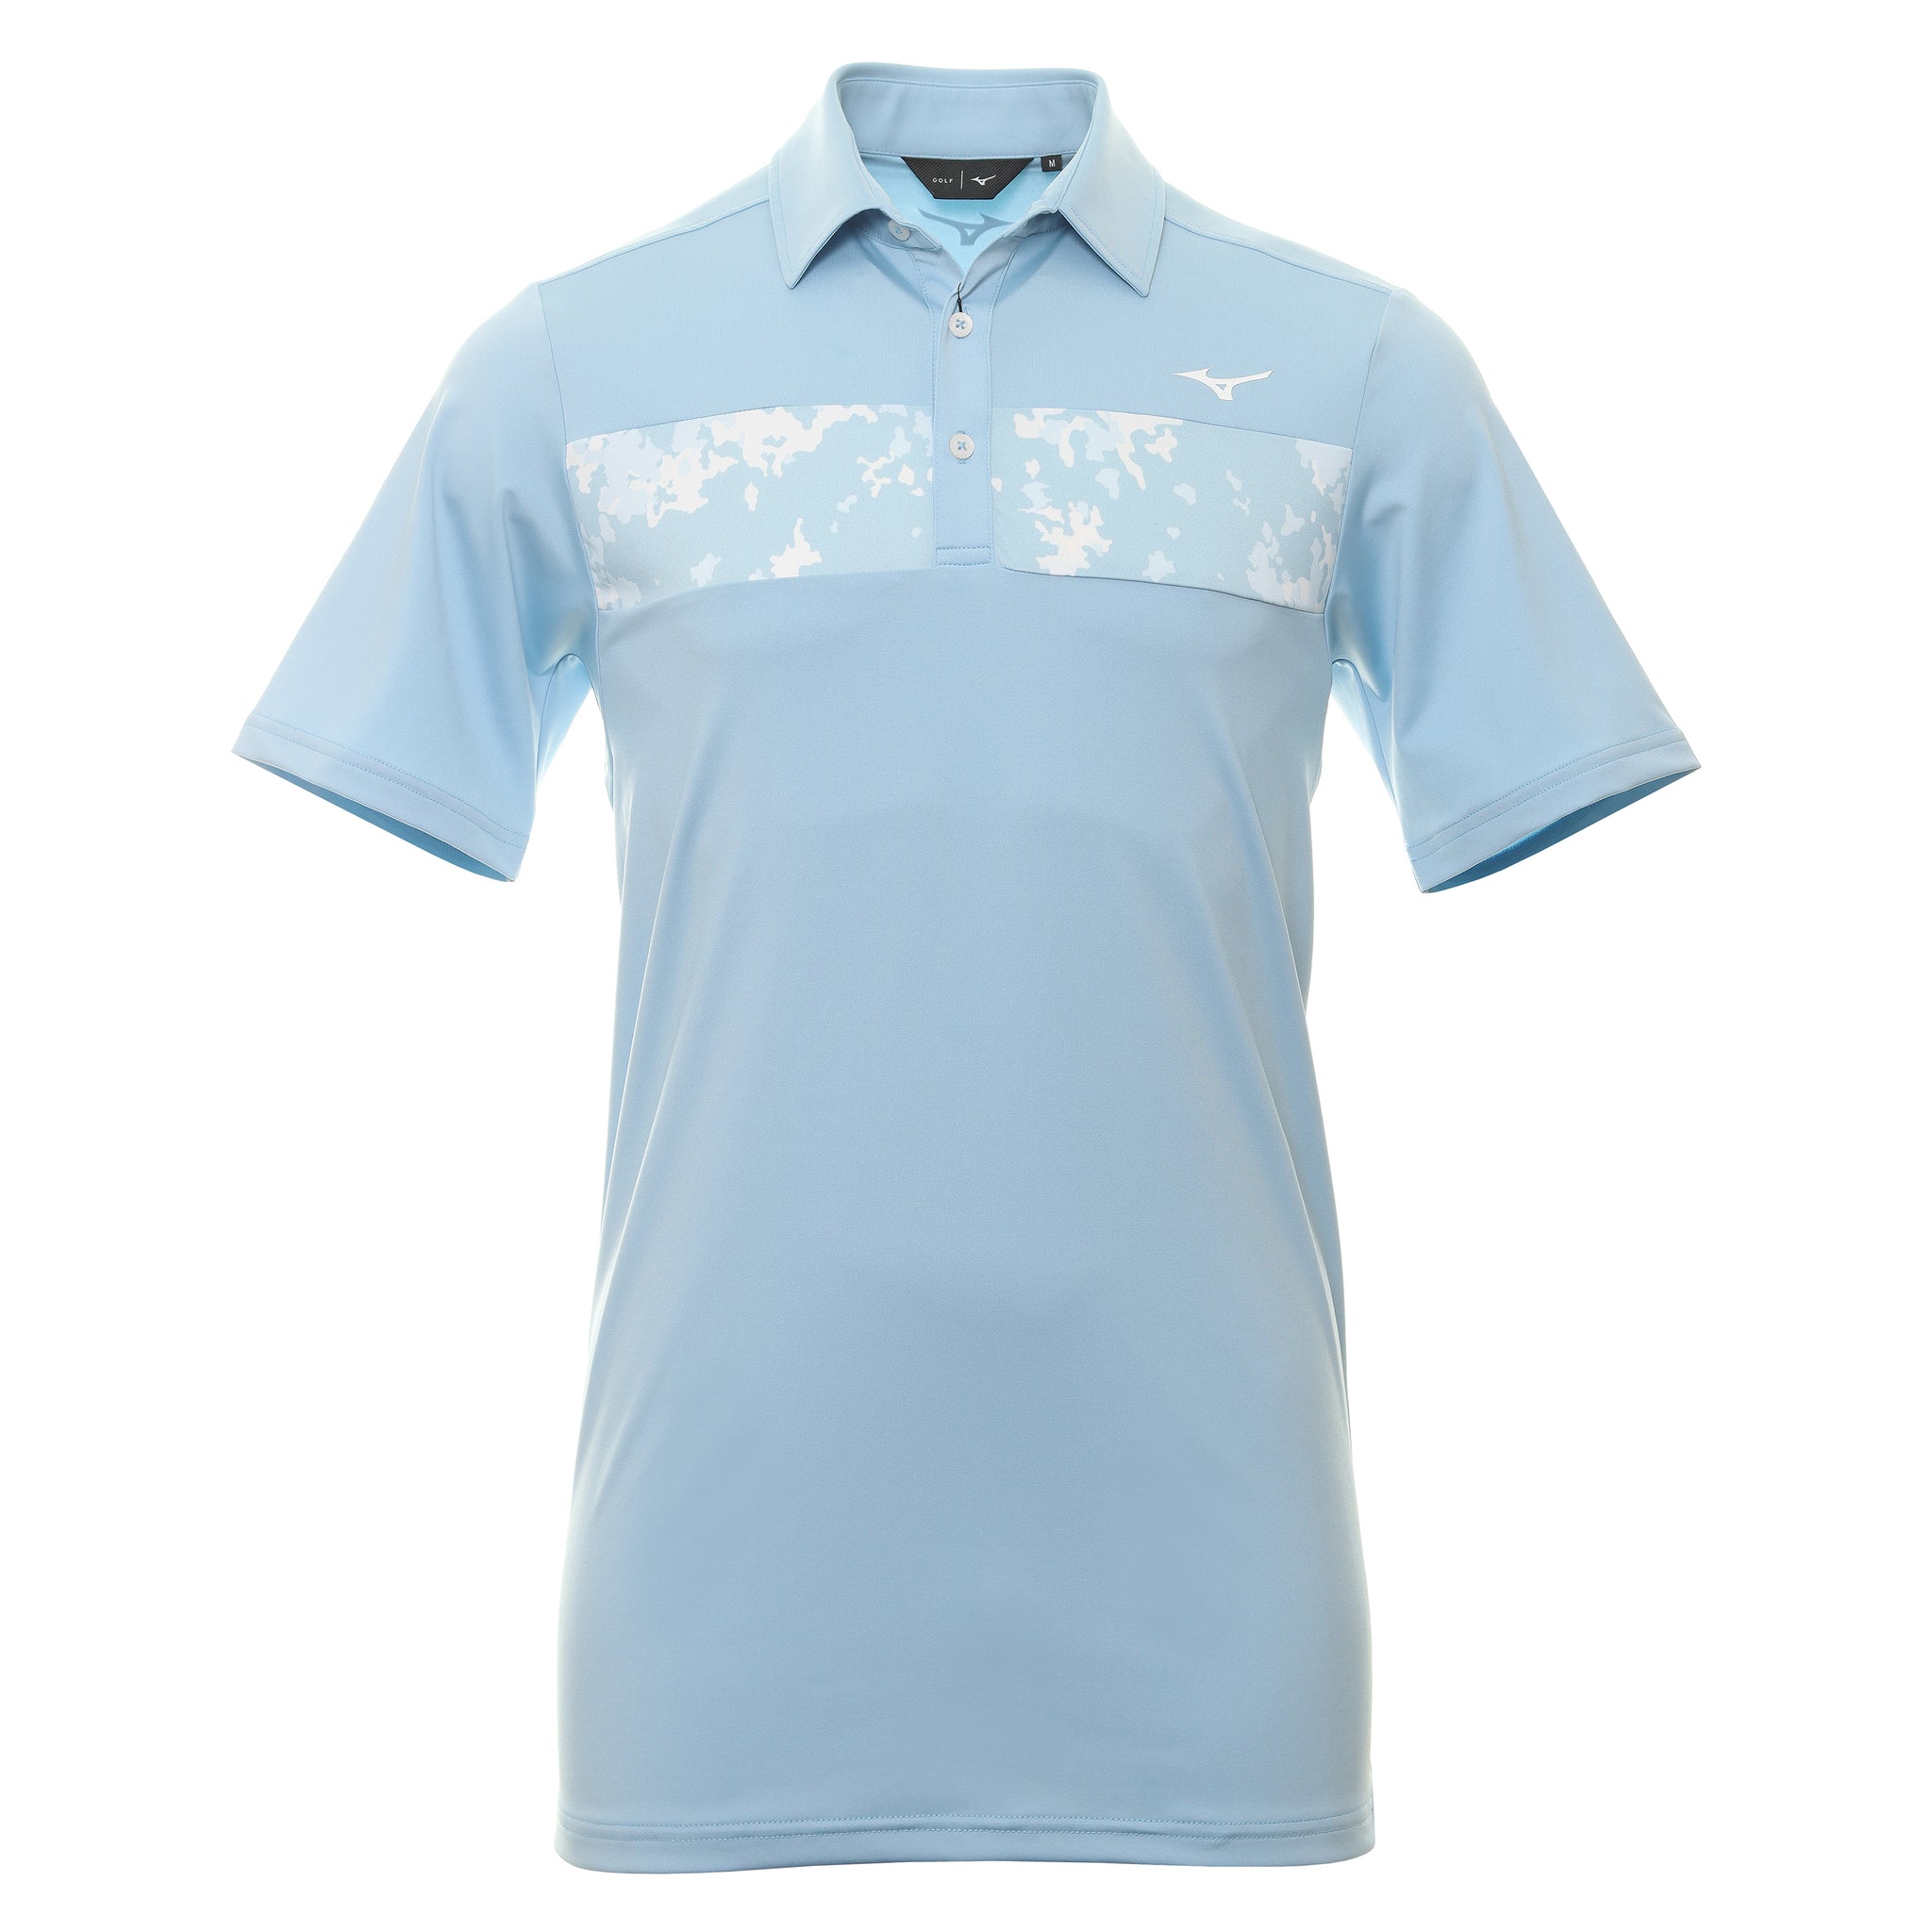 mizuno-golf-floral-st-shirt-52gaa005-dream-blue-26